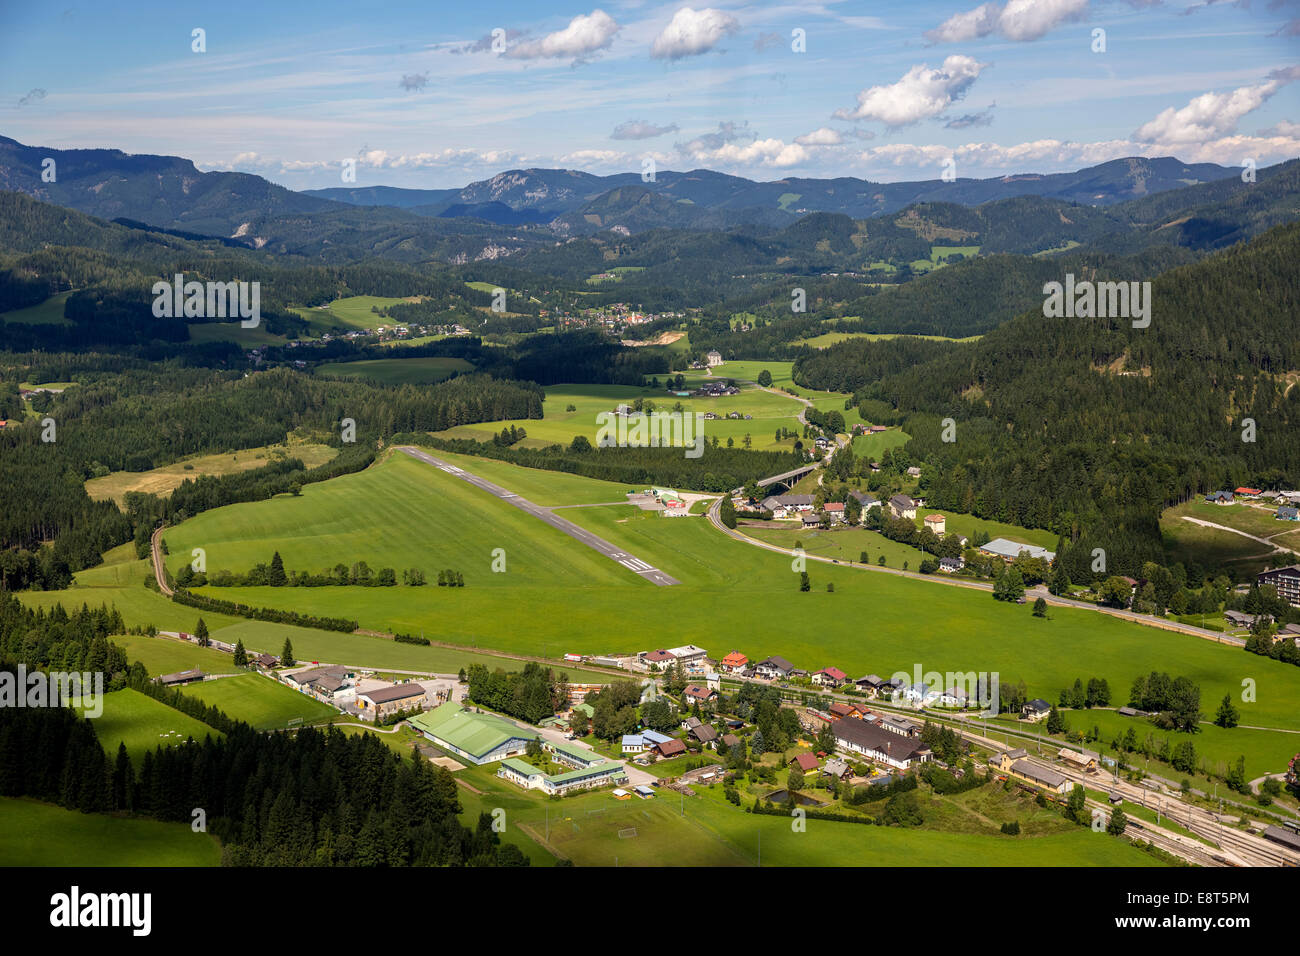 Vue aérienne, Aviation, Mariazell, Styrie, Autriche Banque D'Images